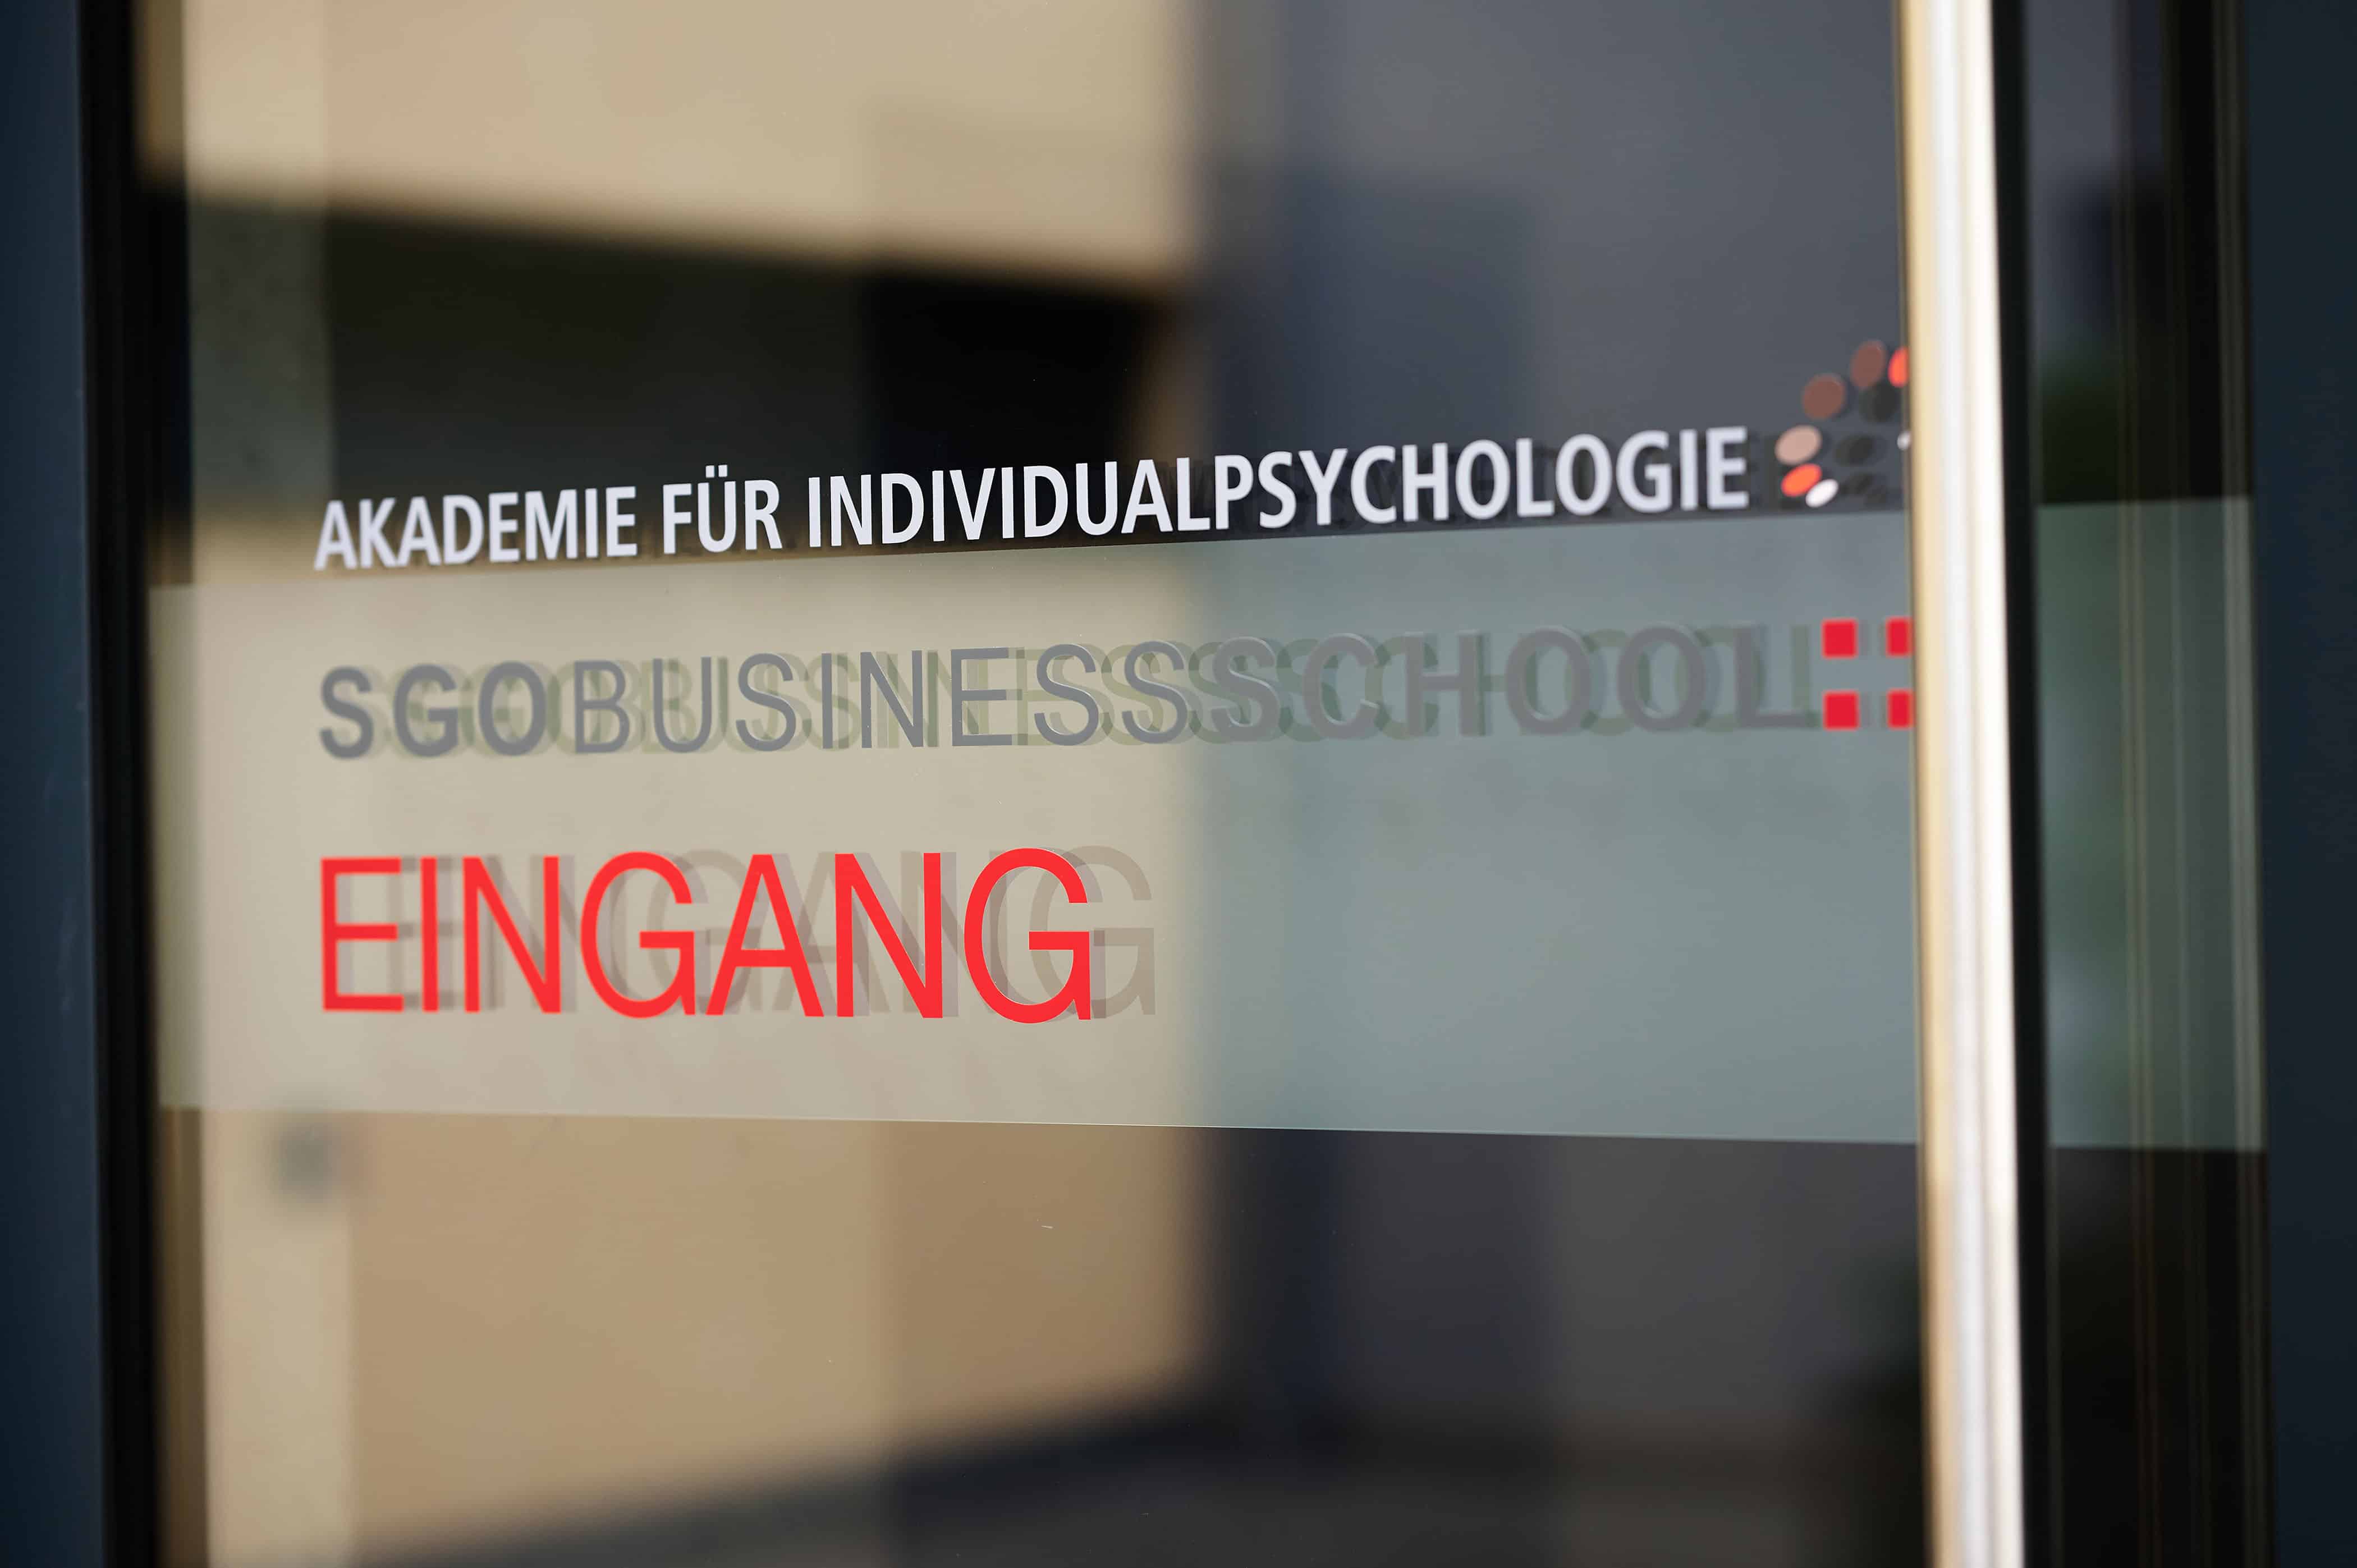 Psychologie studieren oder eine Ausbildung in psychosozialer Beratung?